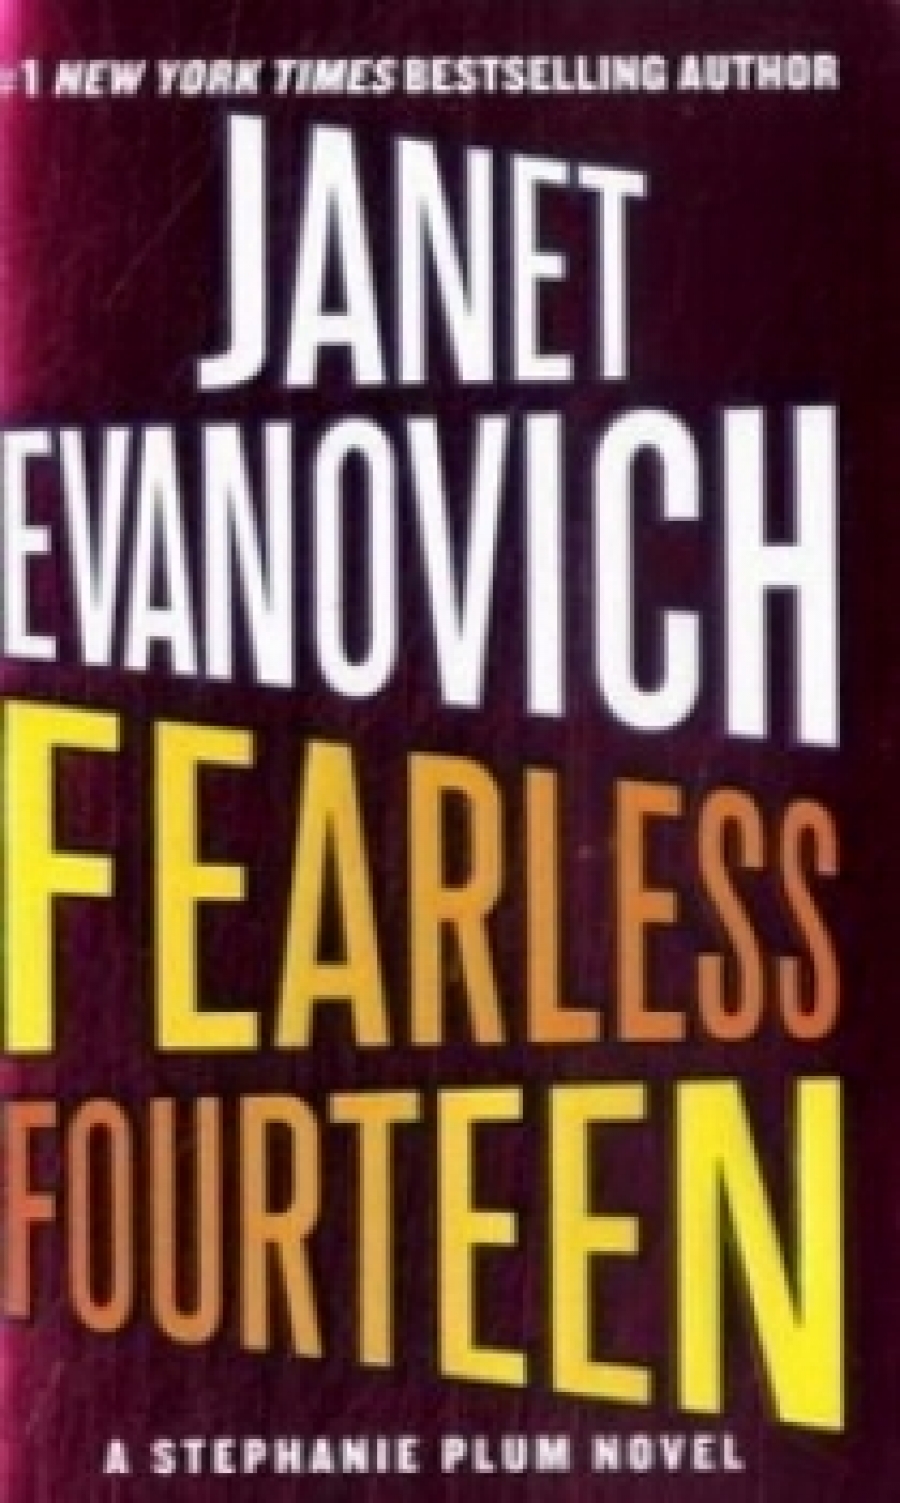 Janet E. Fearless Fourteen 